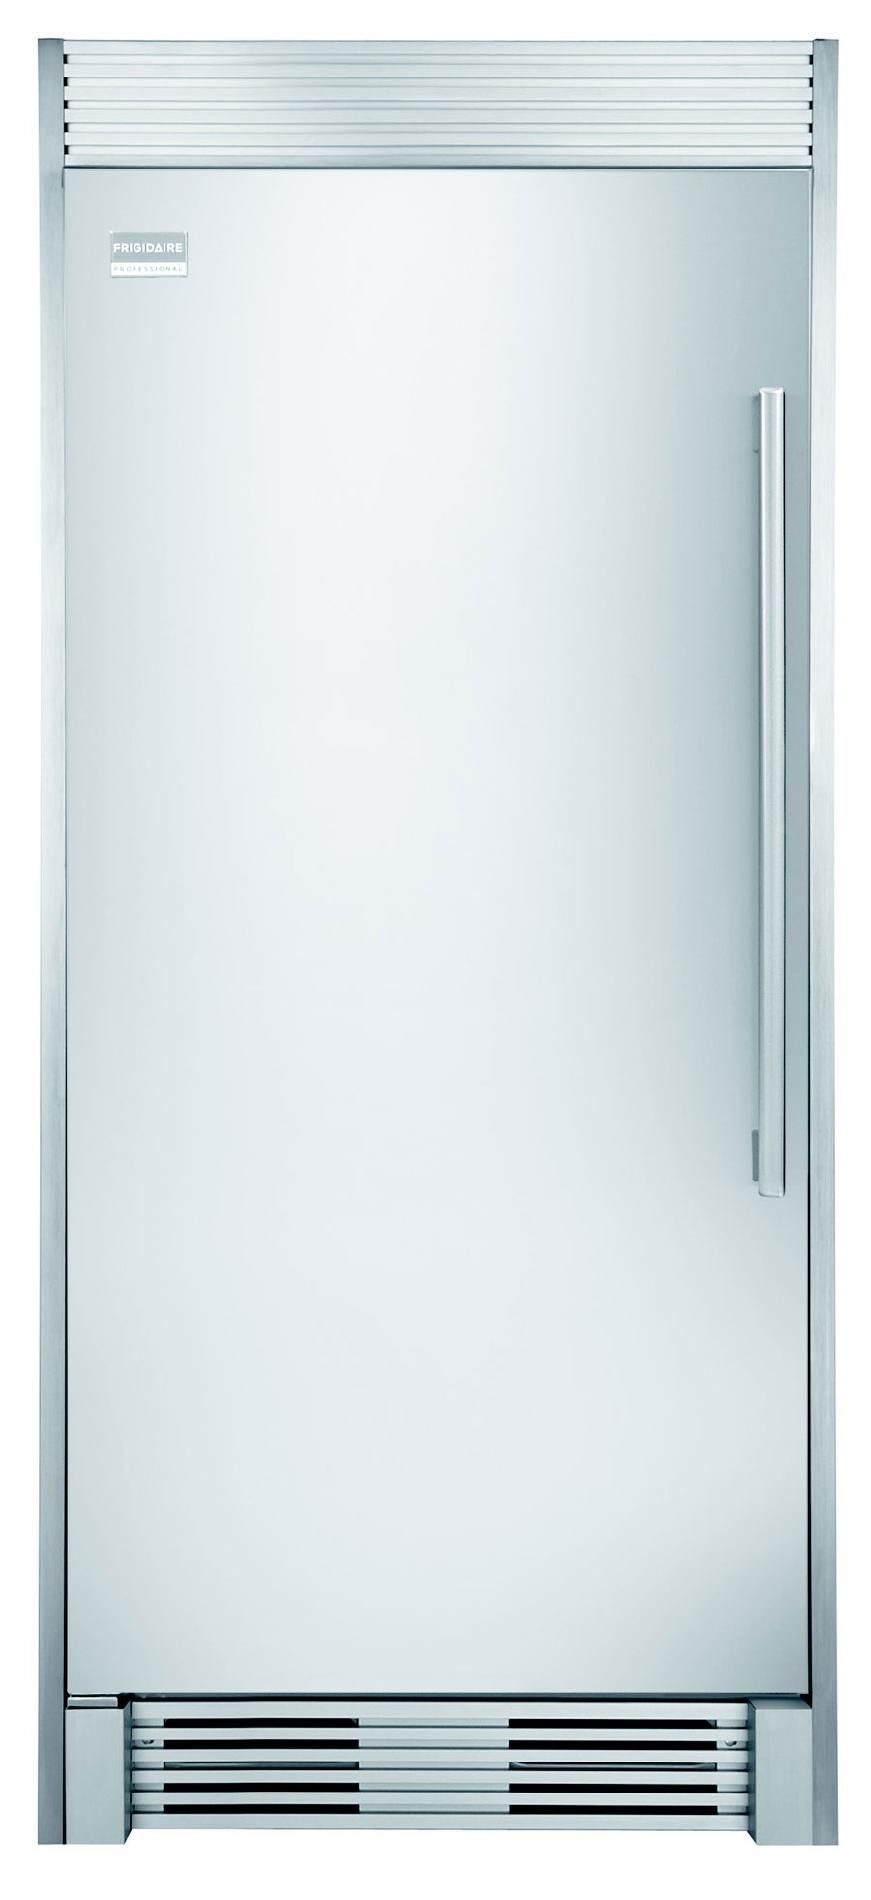 Freezer logo